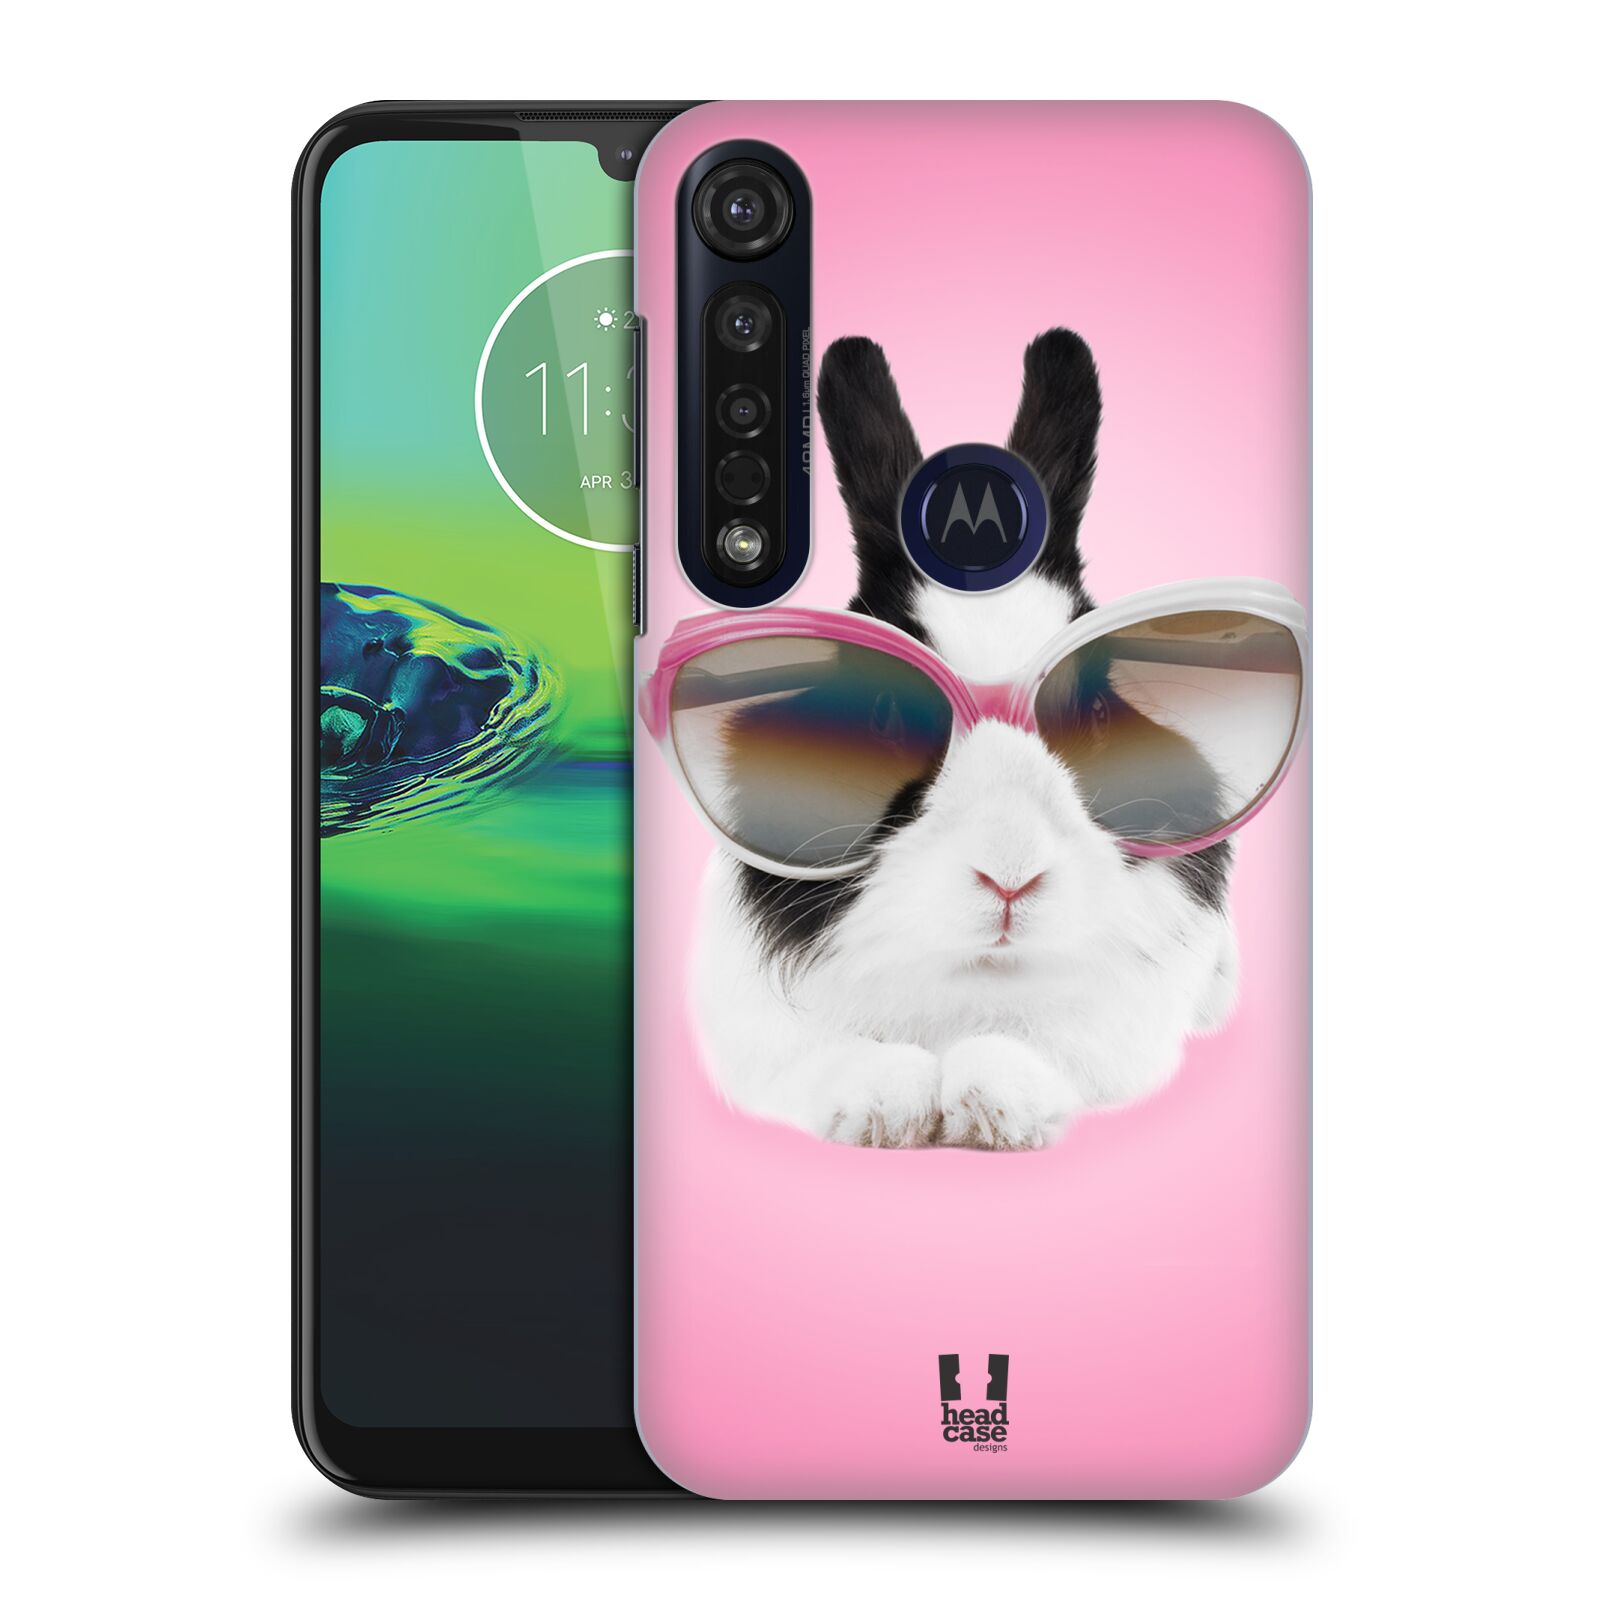 Pouzdro na mobil Motorola Moto G8 PLUS - HEAD CASE - vzor Legrační zvířátka roztomilý králíček s brýlemi růžová